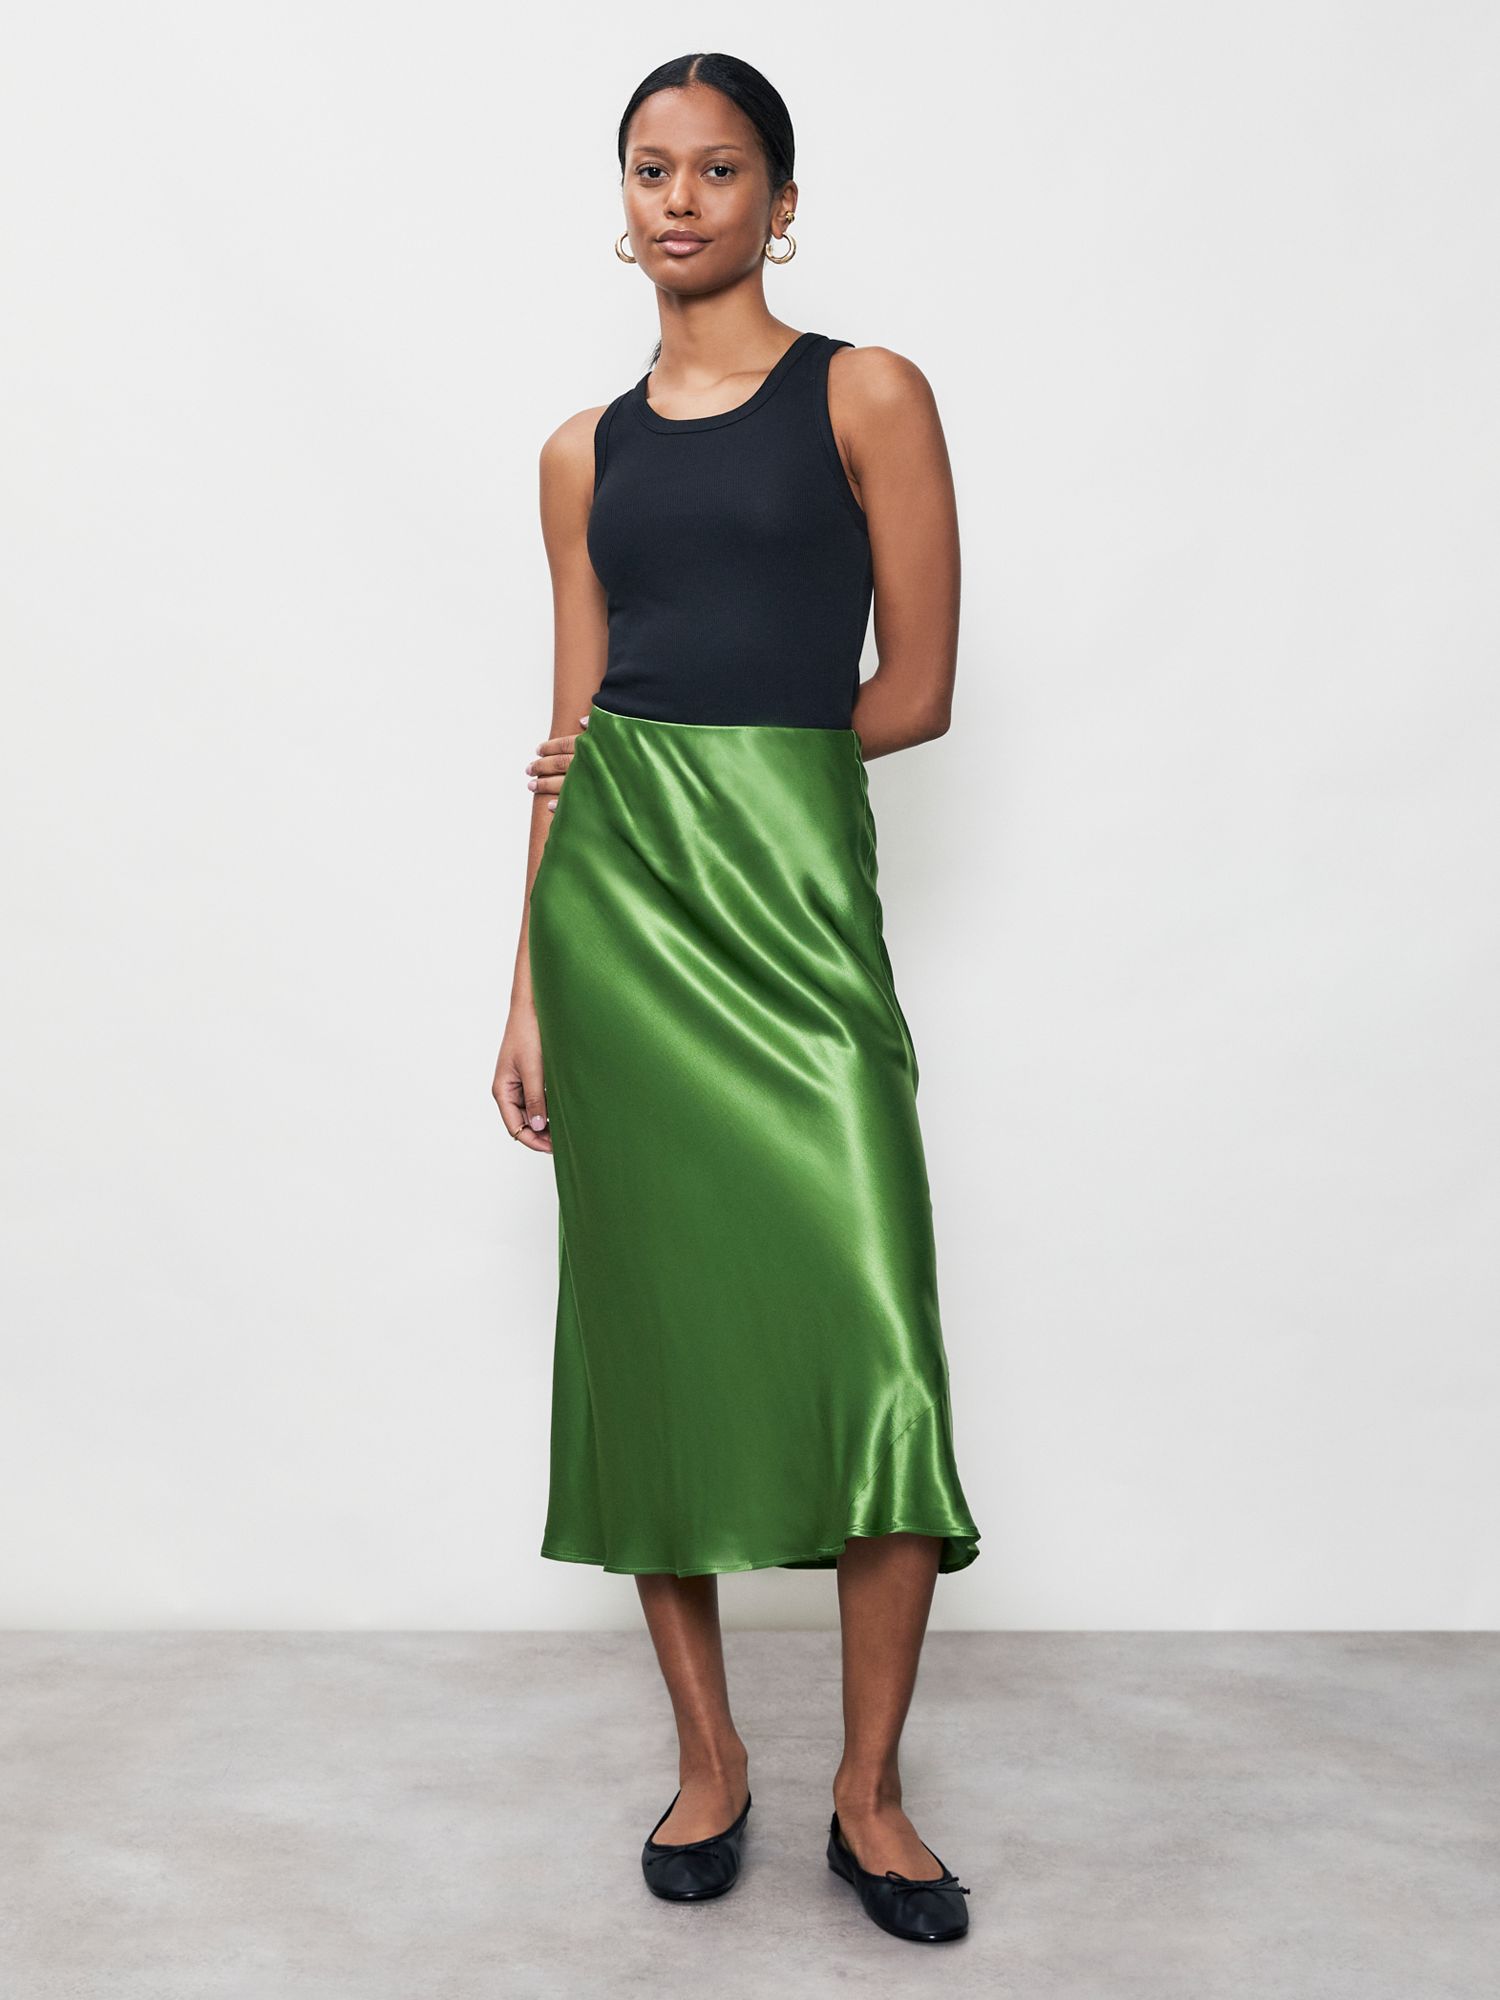 Finery Evelyn Satin Slip Midi Skirt, Green, 8